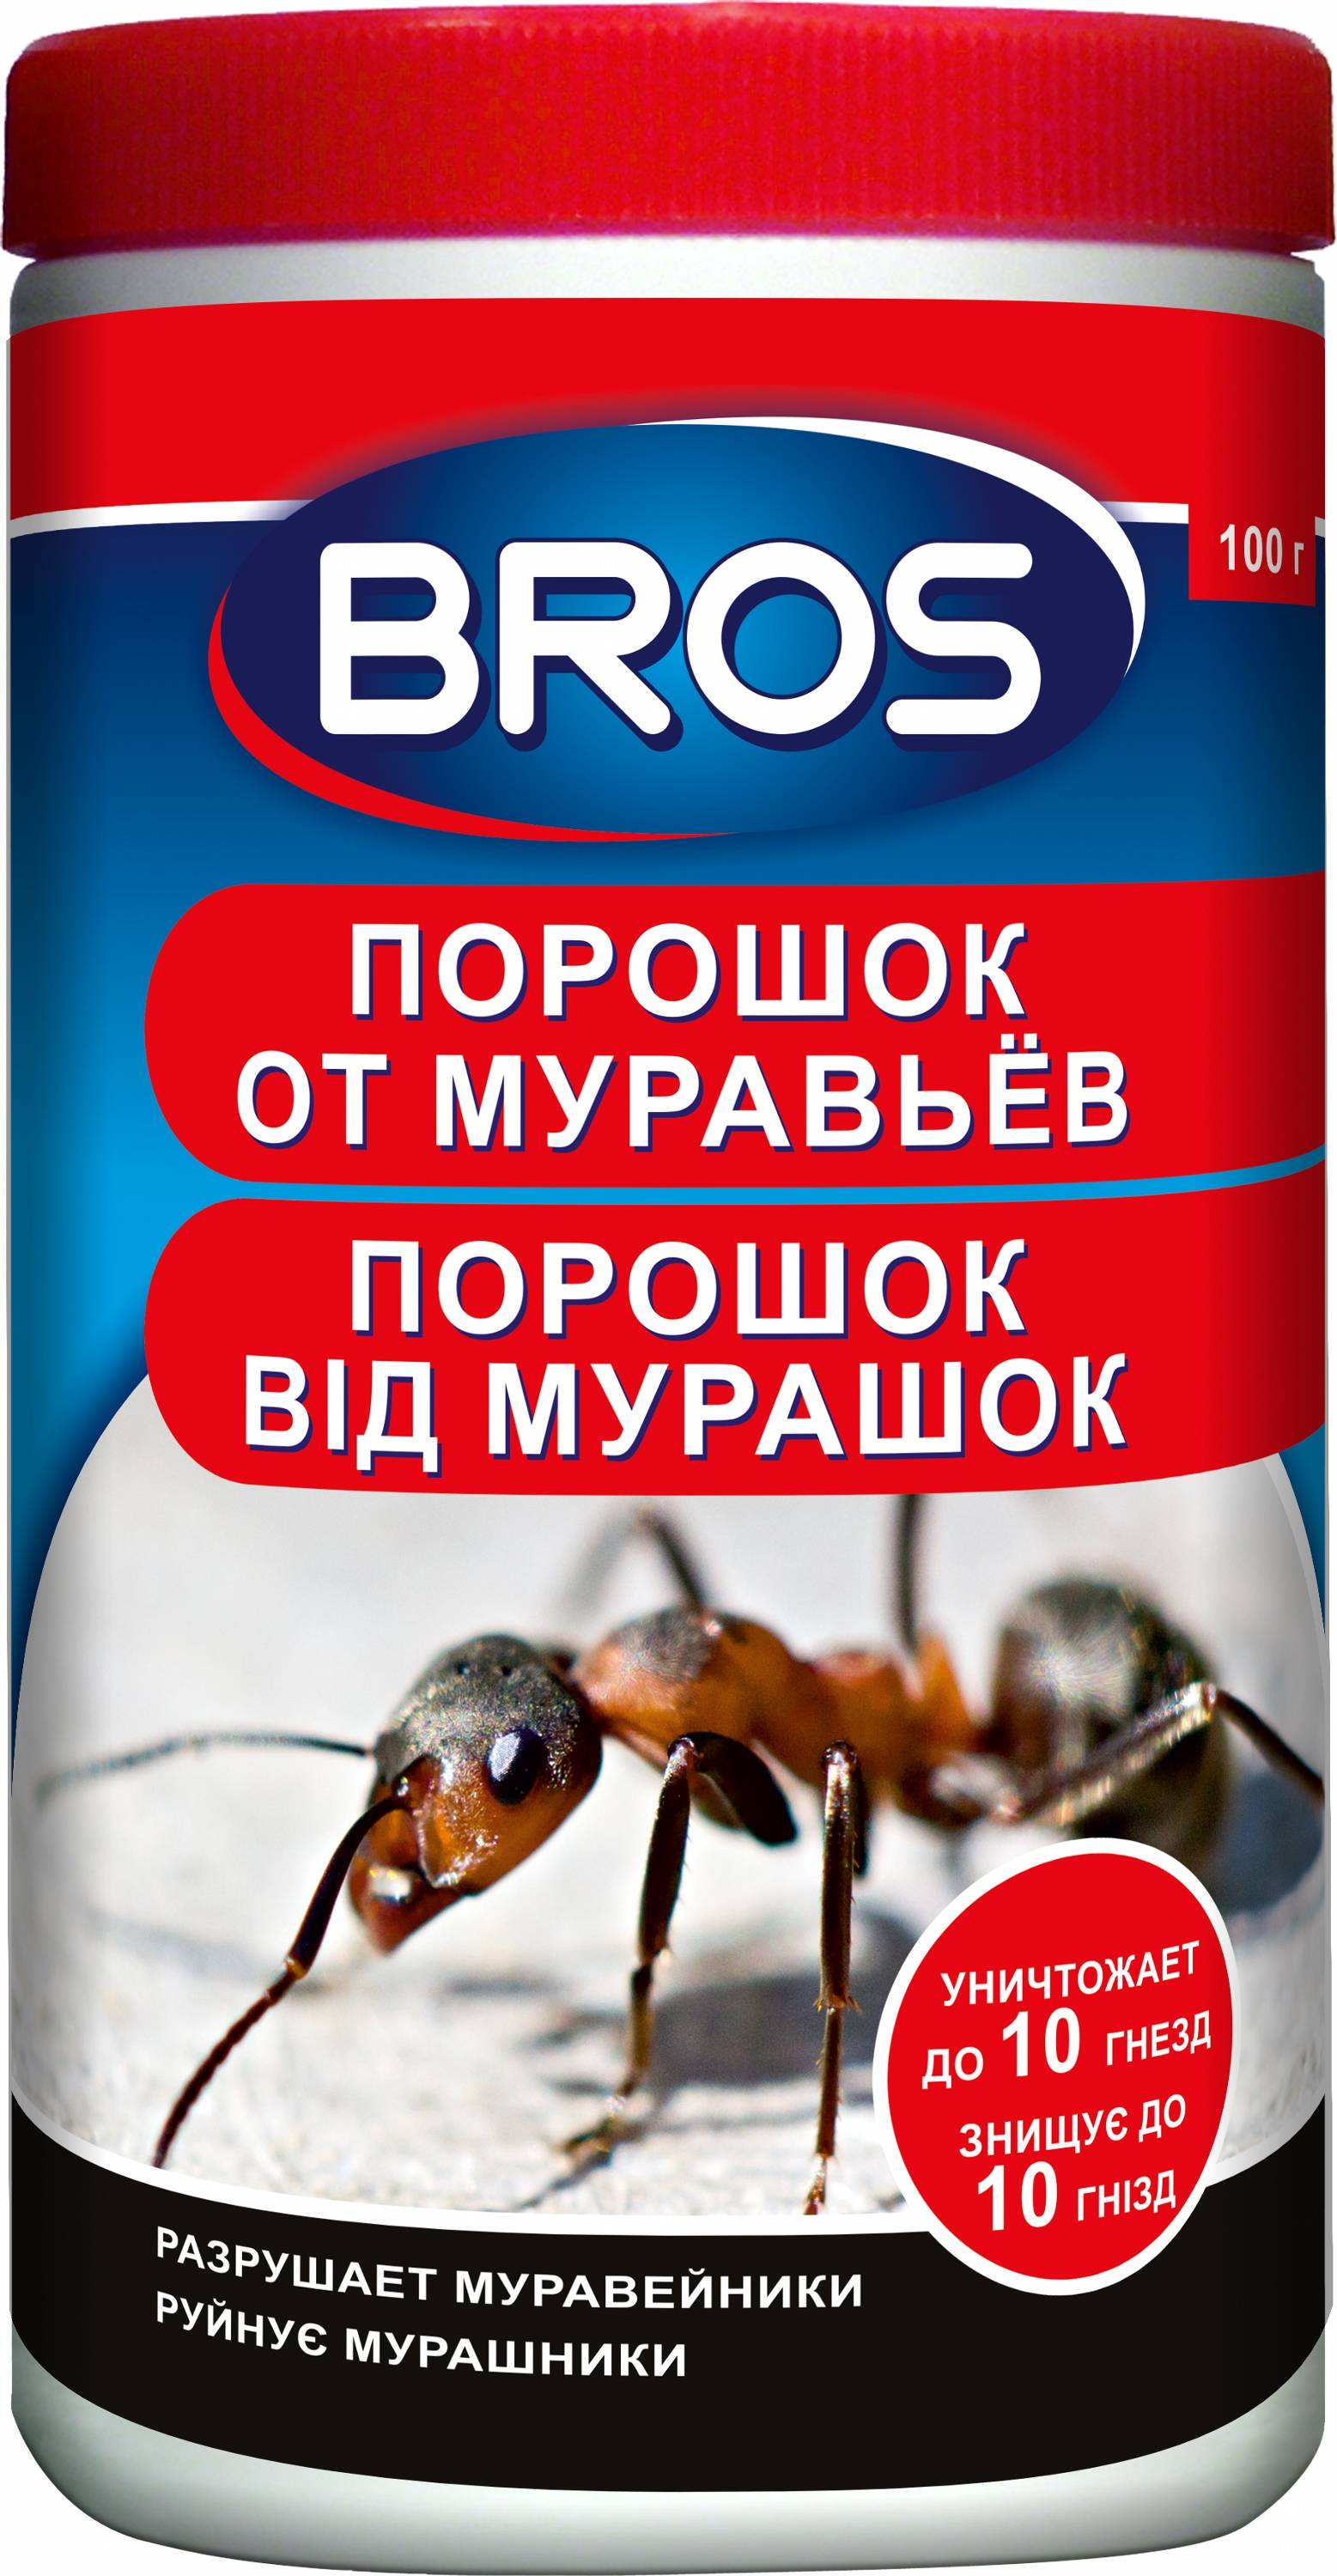 BROS – порошок от муравьёв 100г